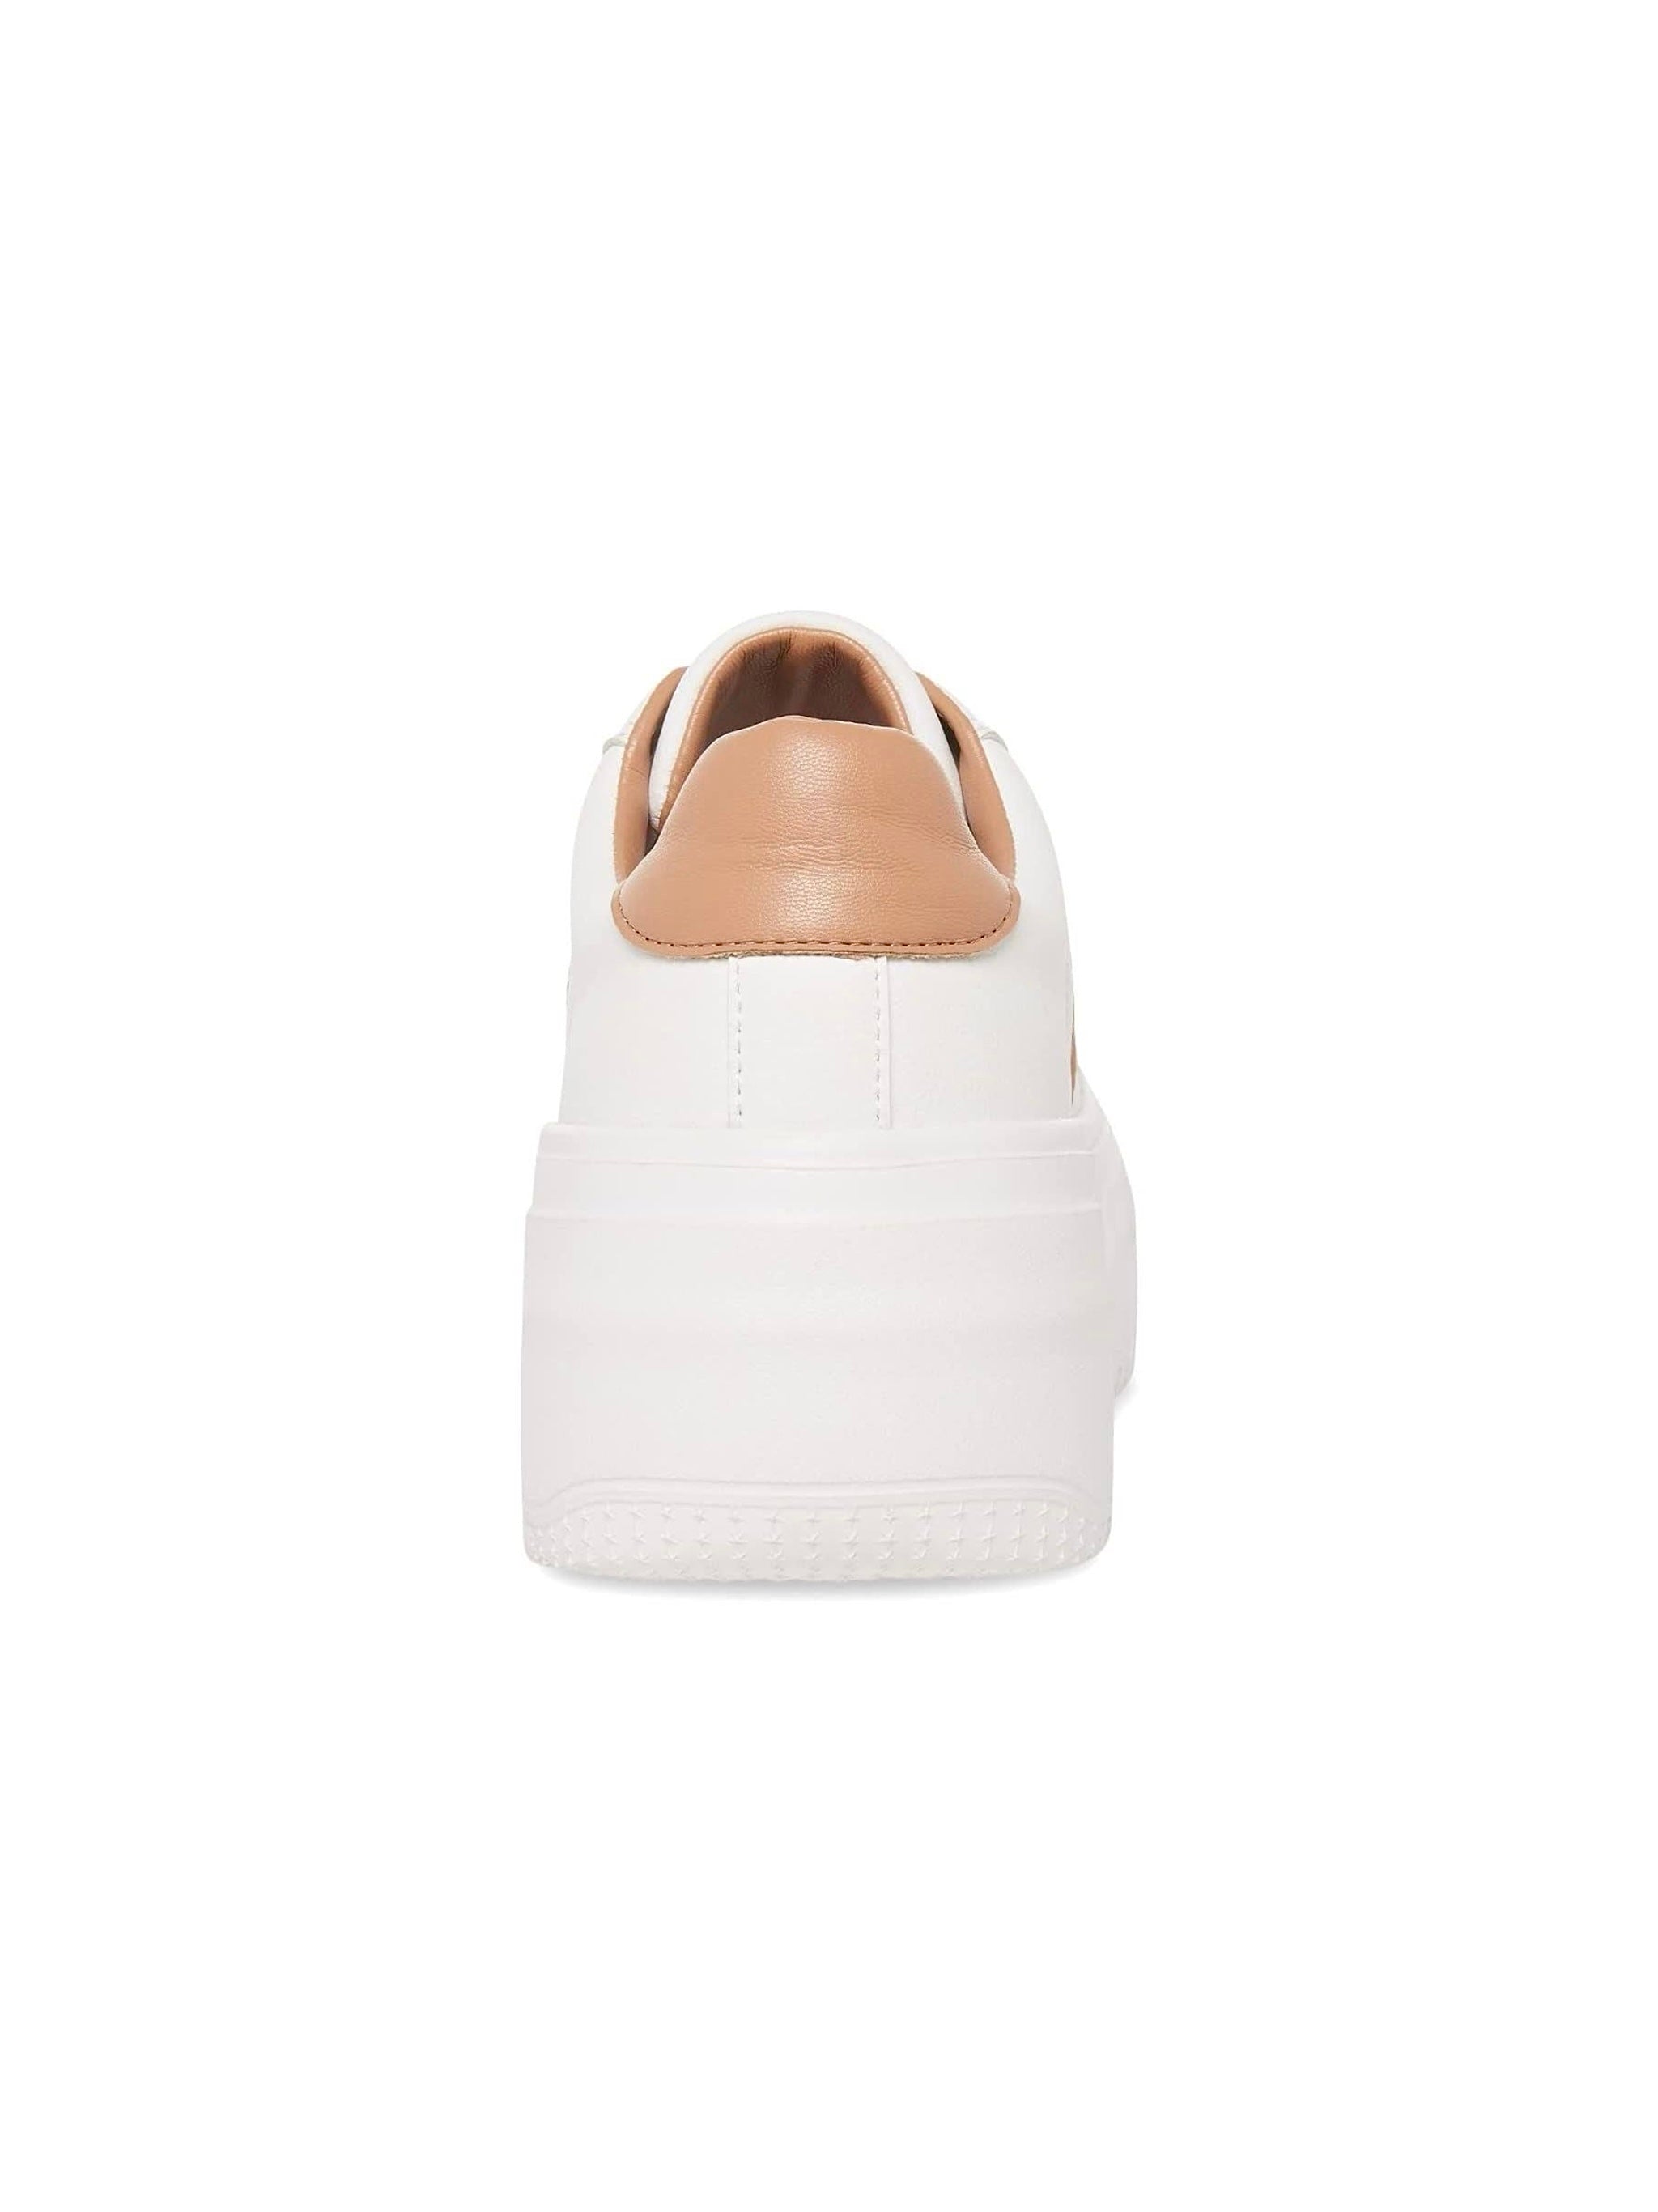 perrin white+ tan sneakers